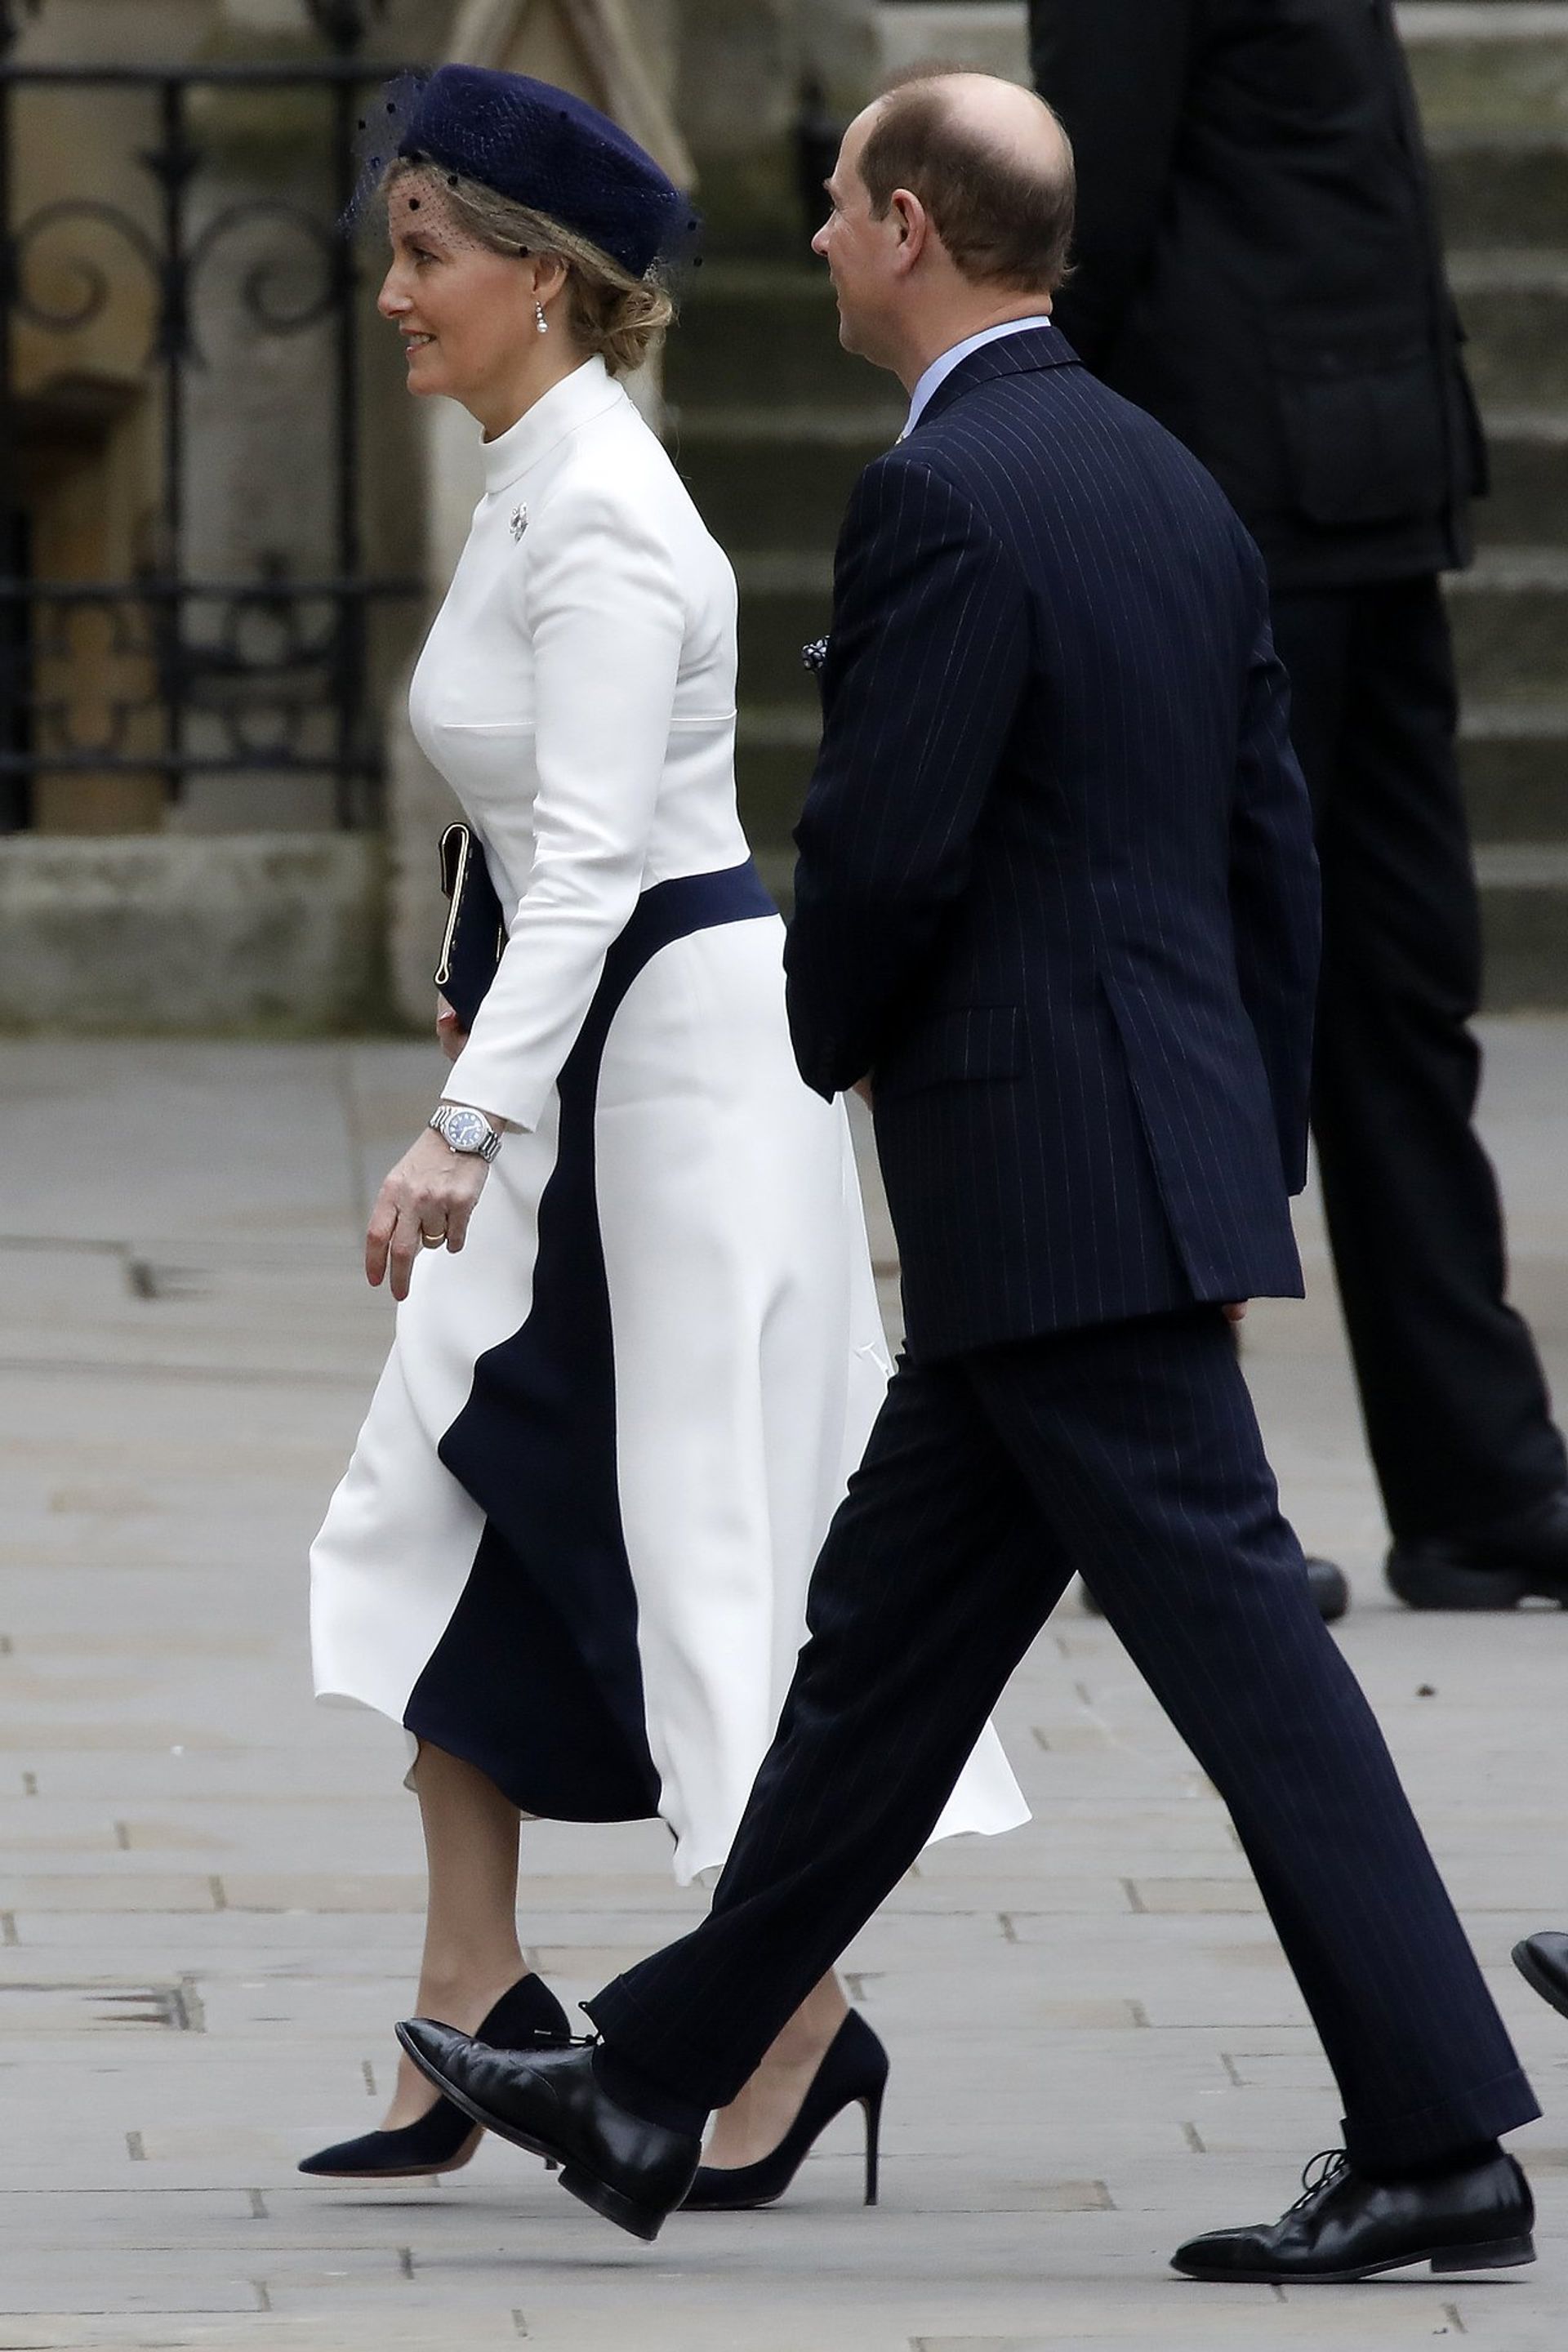 Sophie en Edward arriveren bij Westminster Abbey voor de viering van Commonwealth Day, 9 maart 2020.